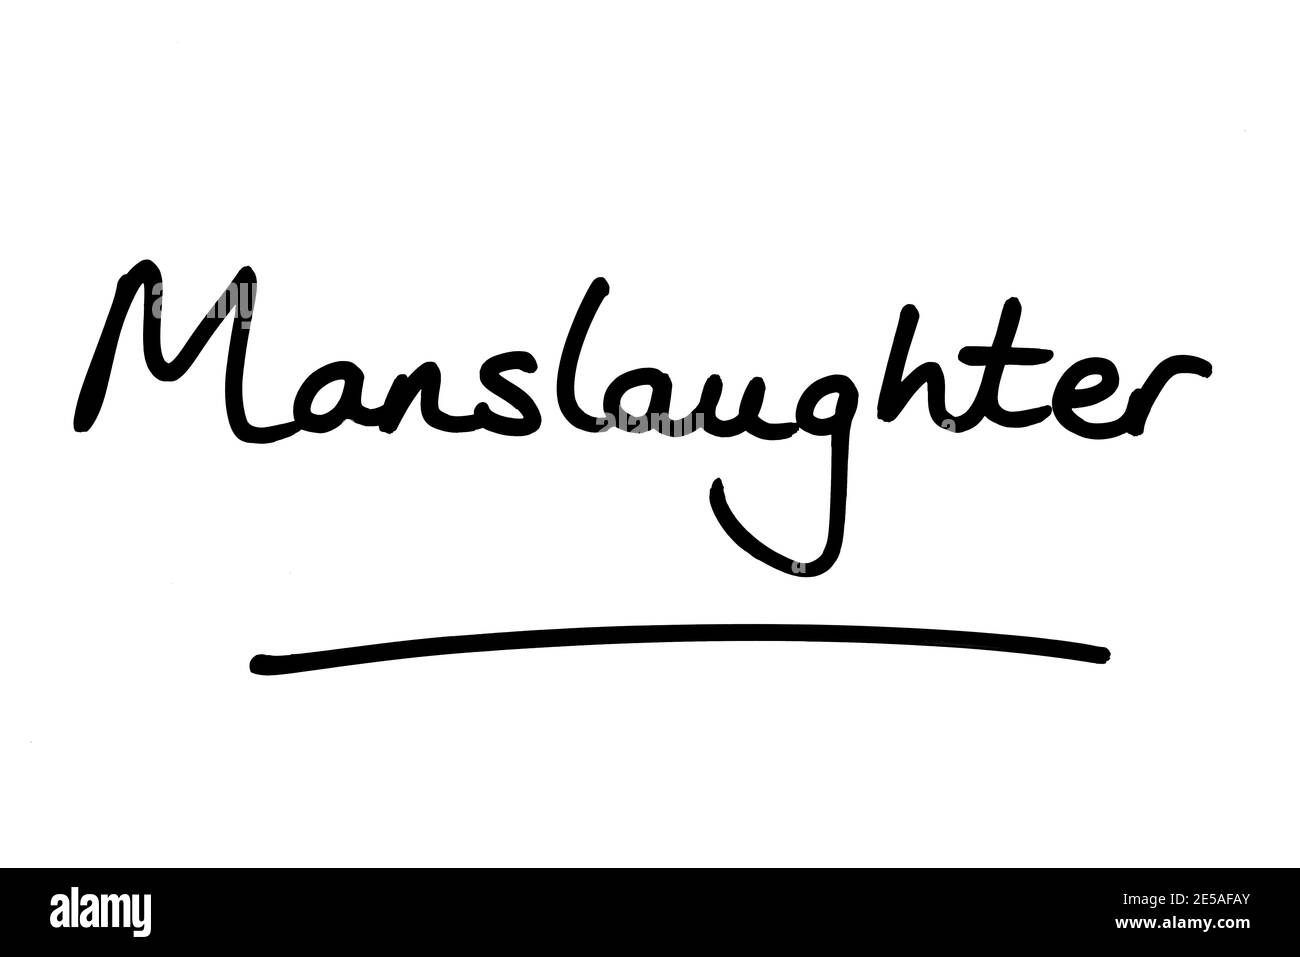 La palabra Mansrike, escrita a mano sobre un fondo blanco. Foto de stock